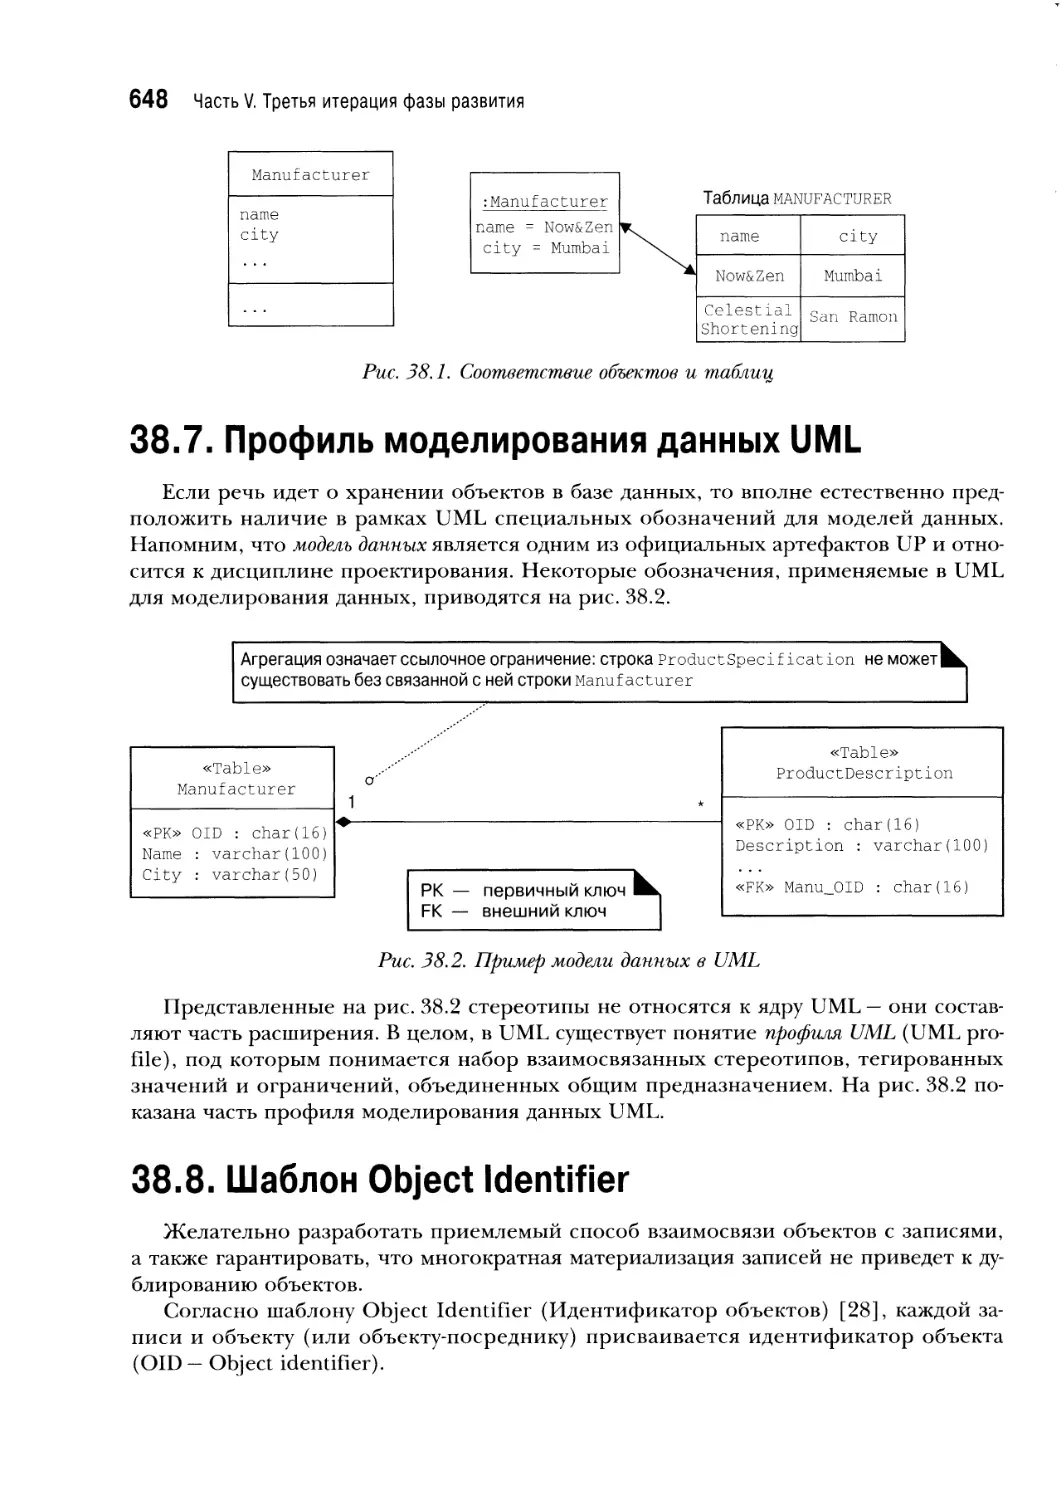 38.7. Профиль моделирования данных UML
38.8. Шаблон Object Identifier